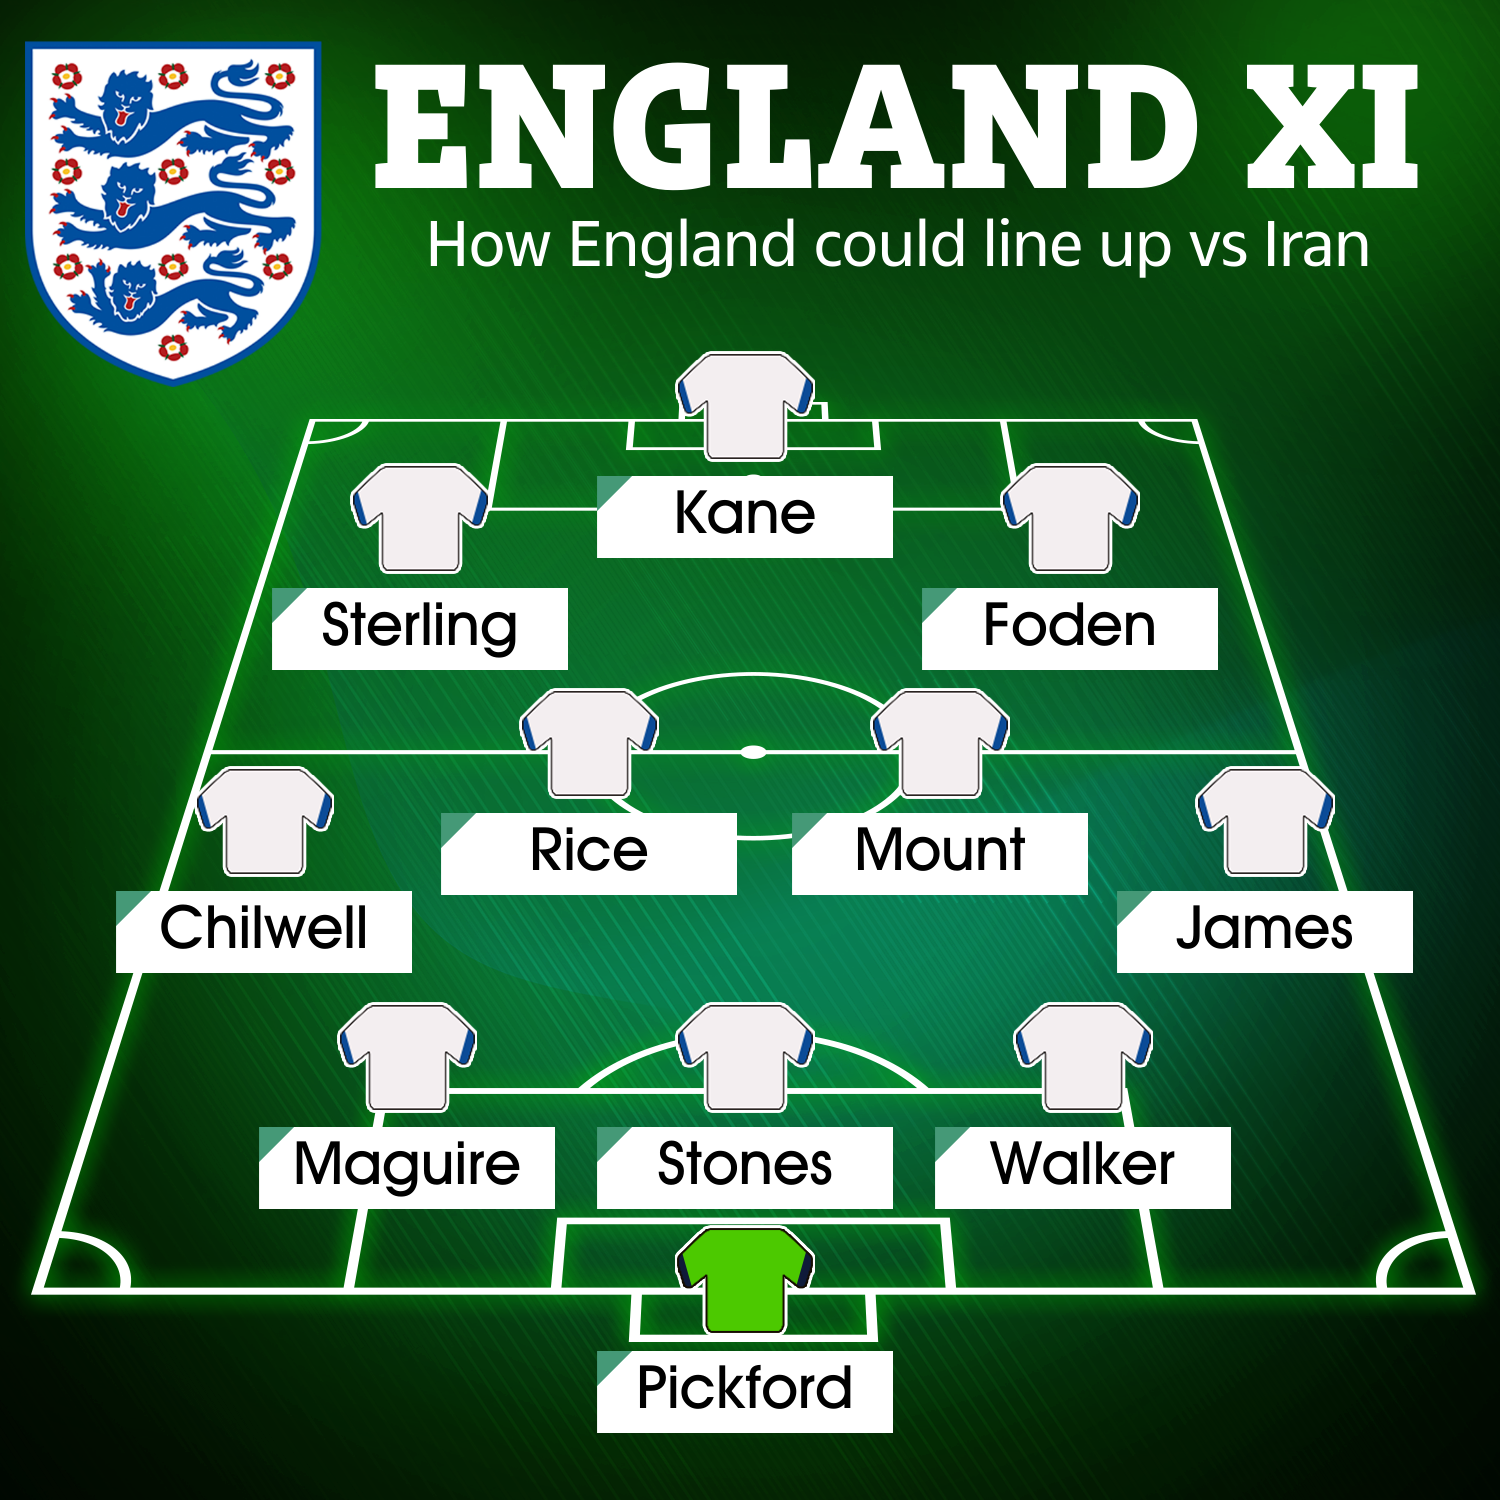 Siêu máy tính đưa ra dự đoán đội hình đội tuyển Anh sẽ ra quân trong trận mở màn World Cup